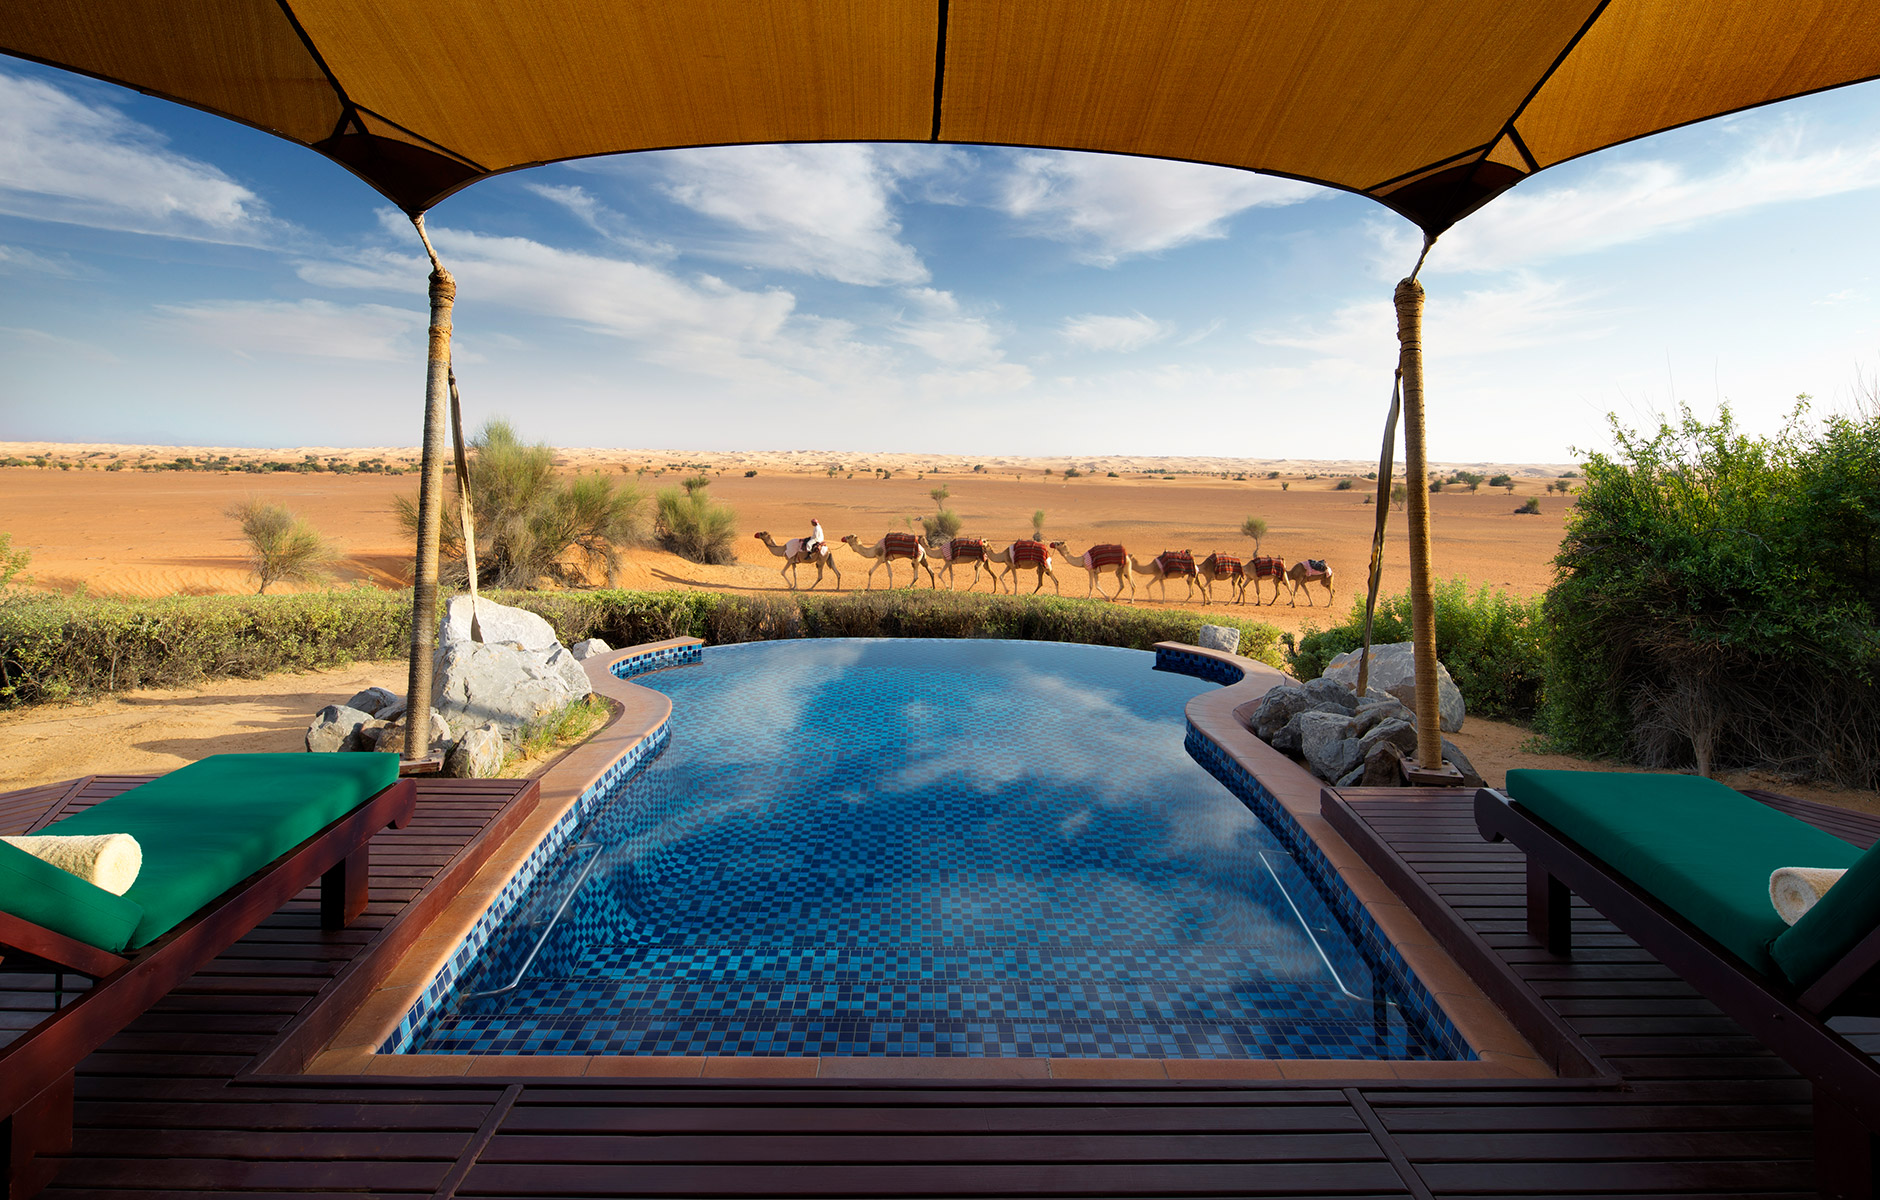 Blick in die Wüste mit Kamelen über den Pool einer Villa